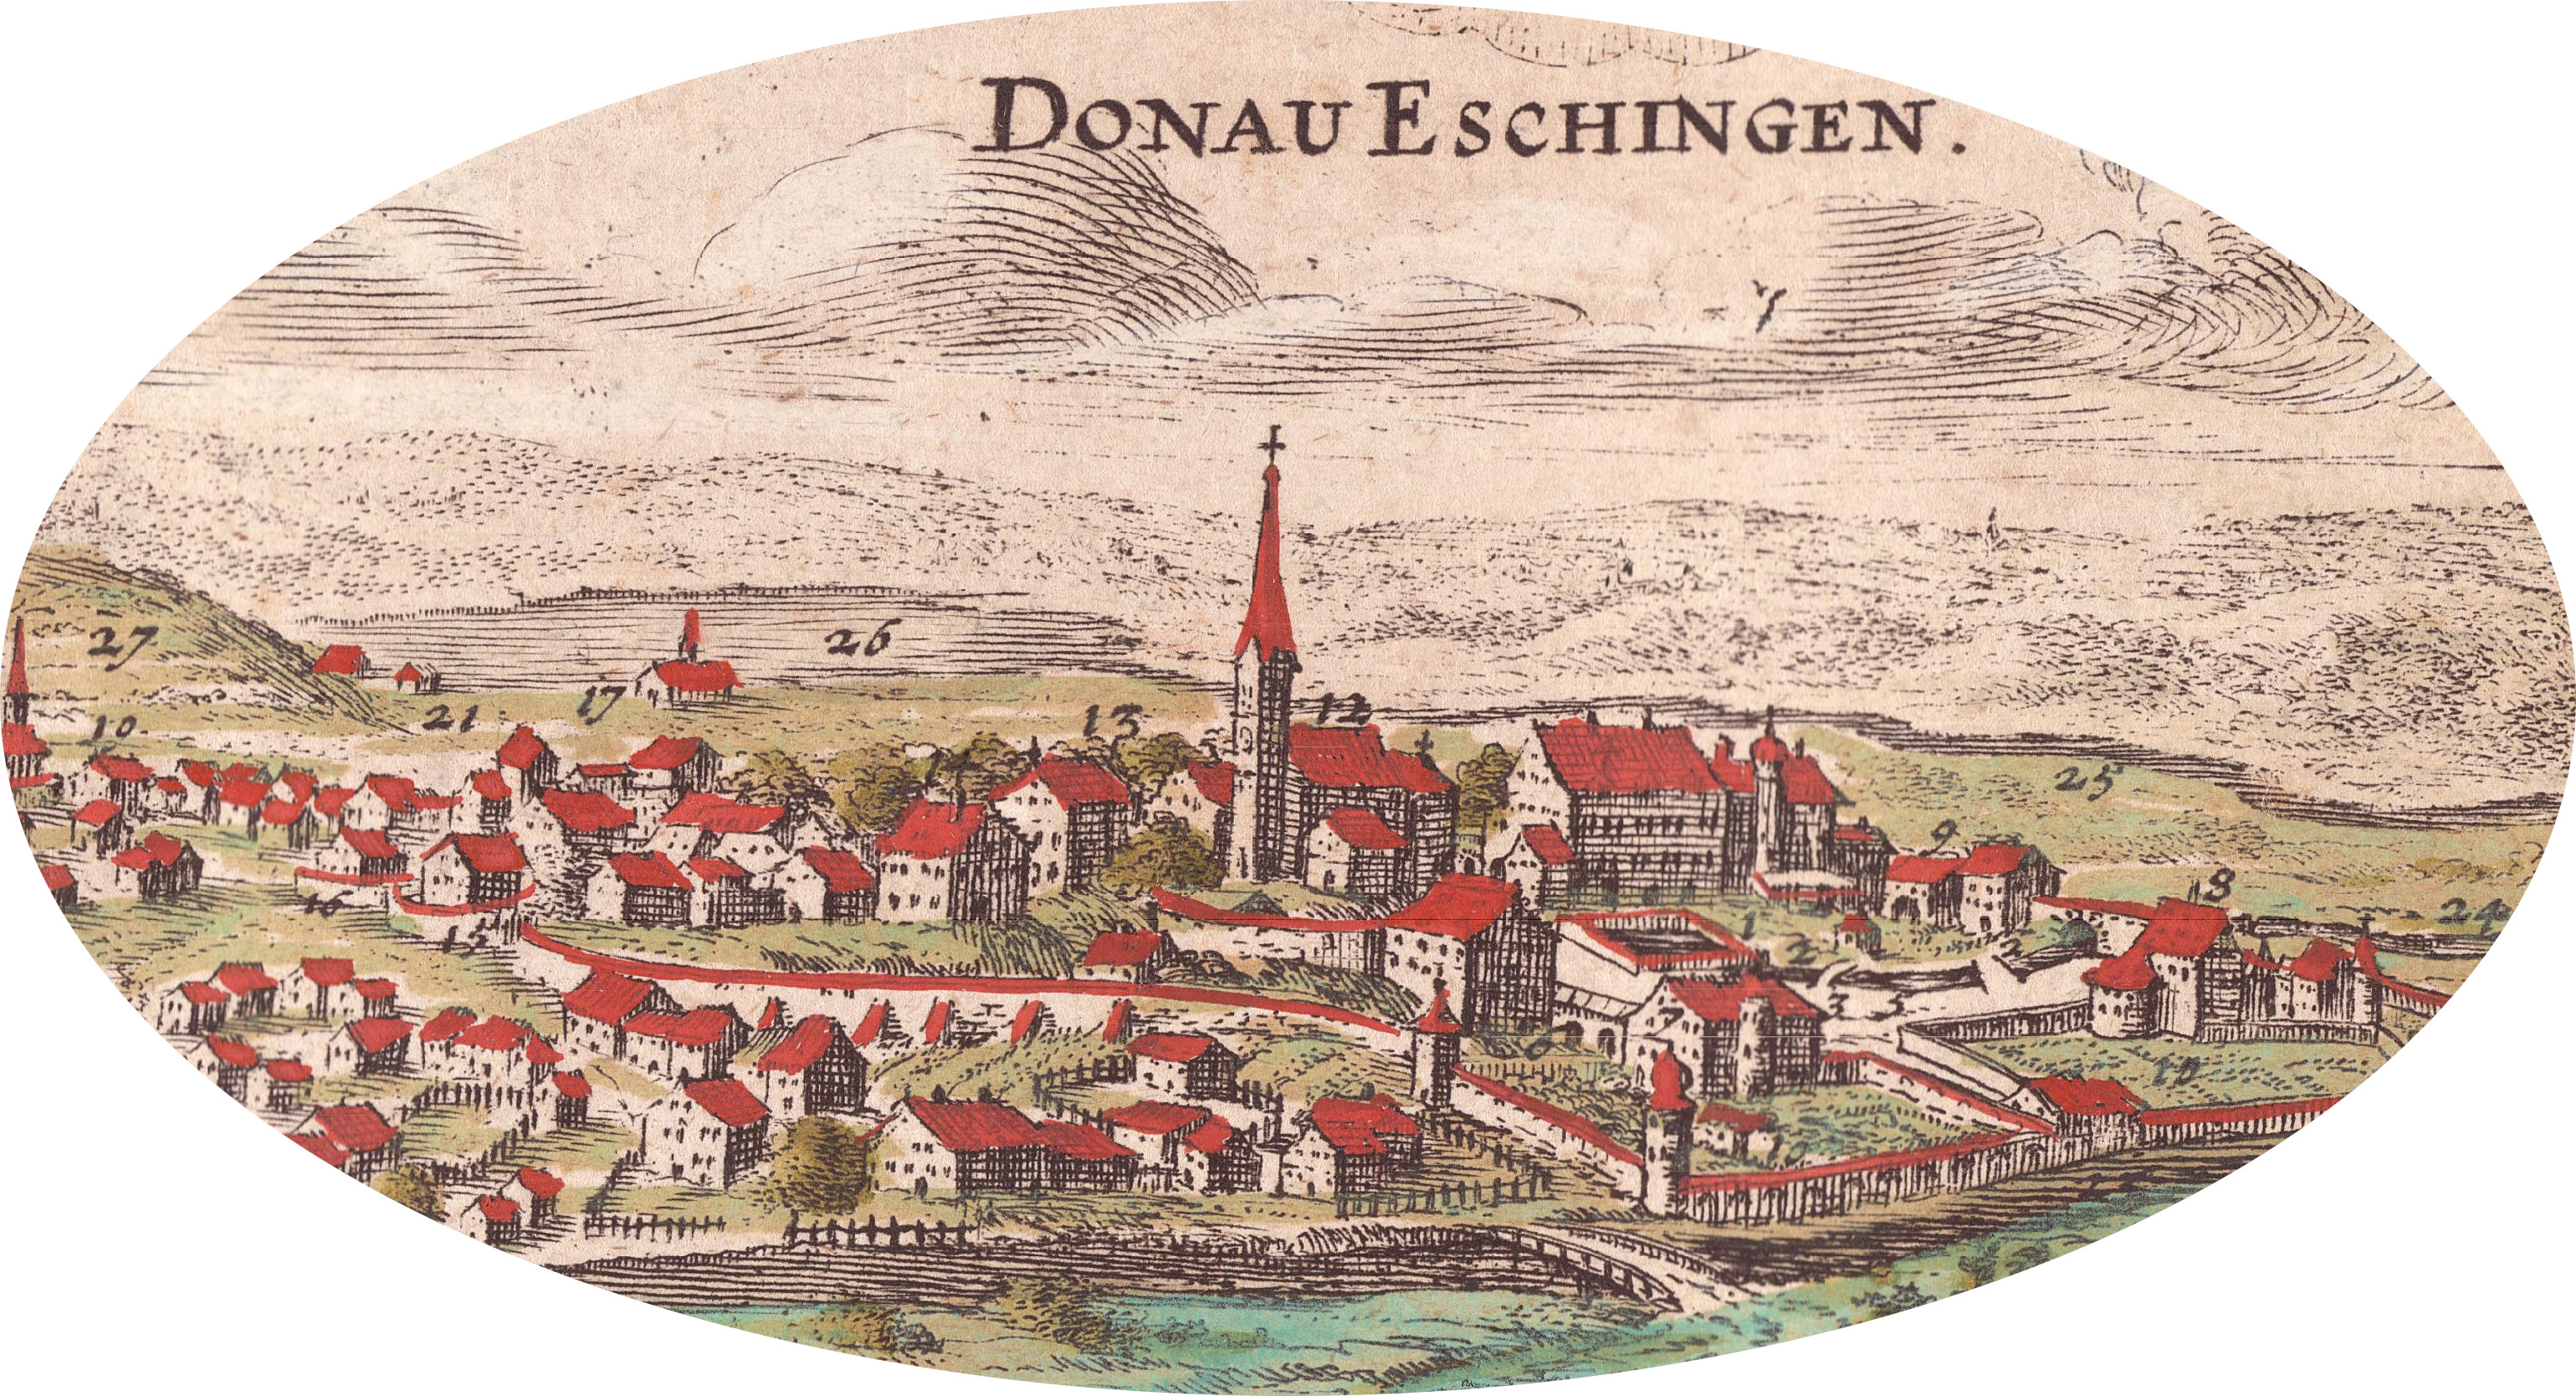 Das Dorf Donau- eschingen vor dem Bau der Residenz